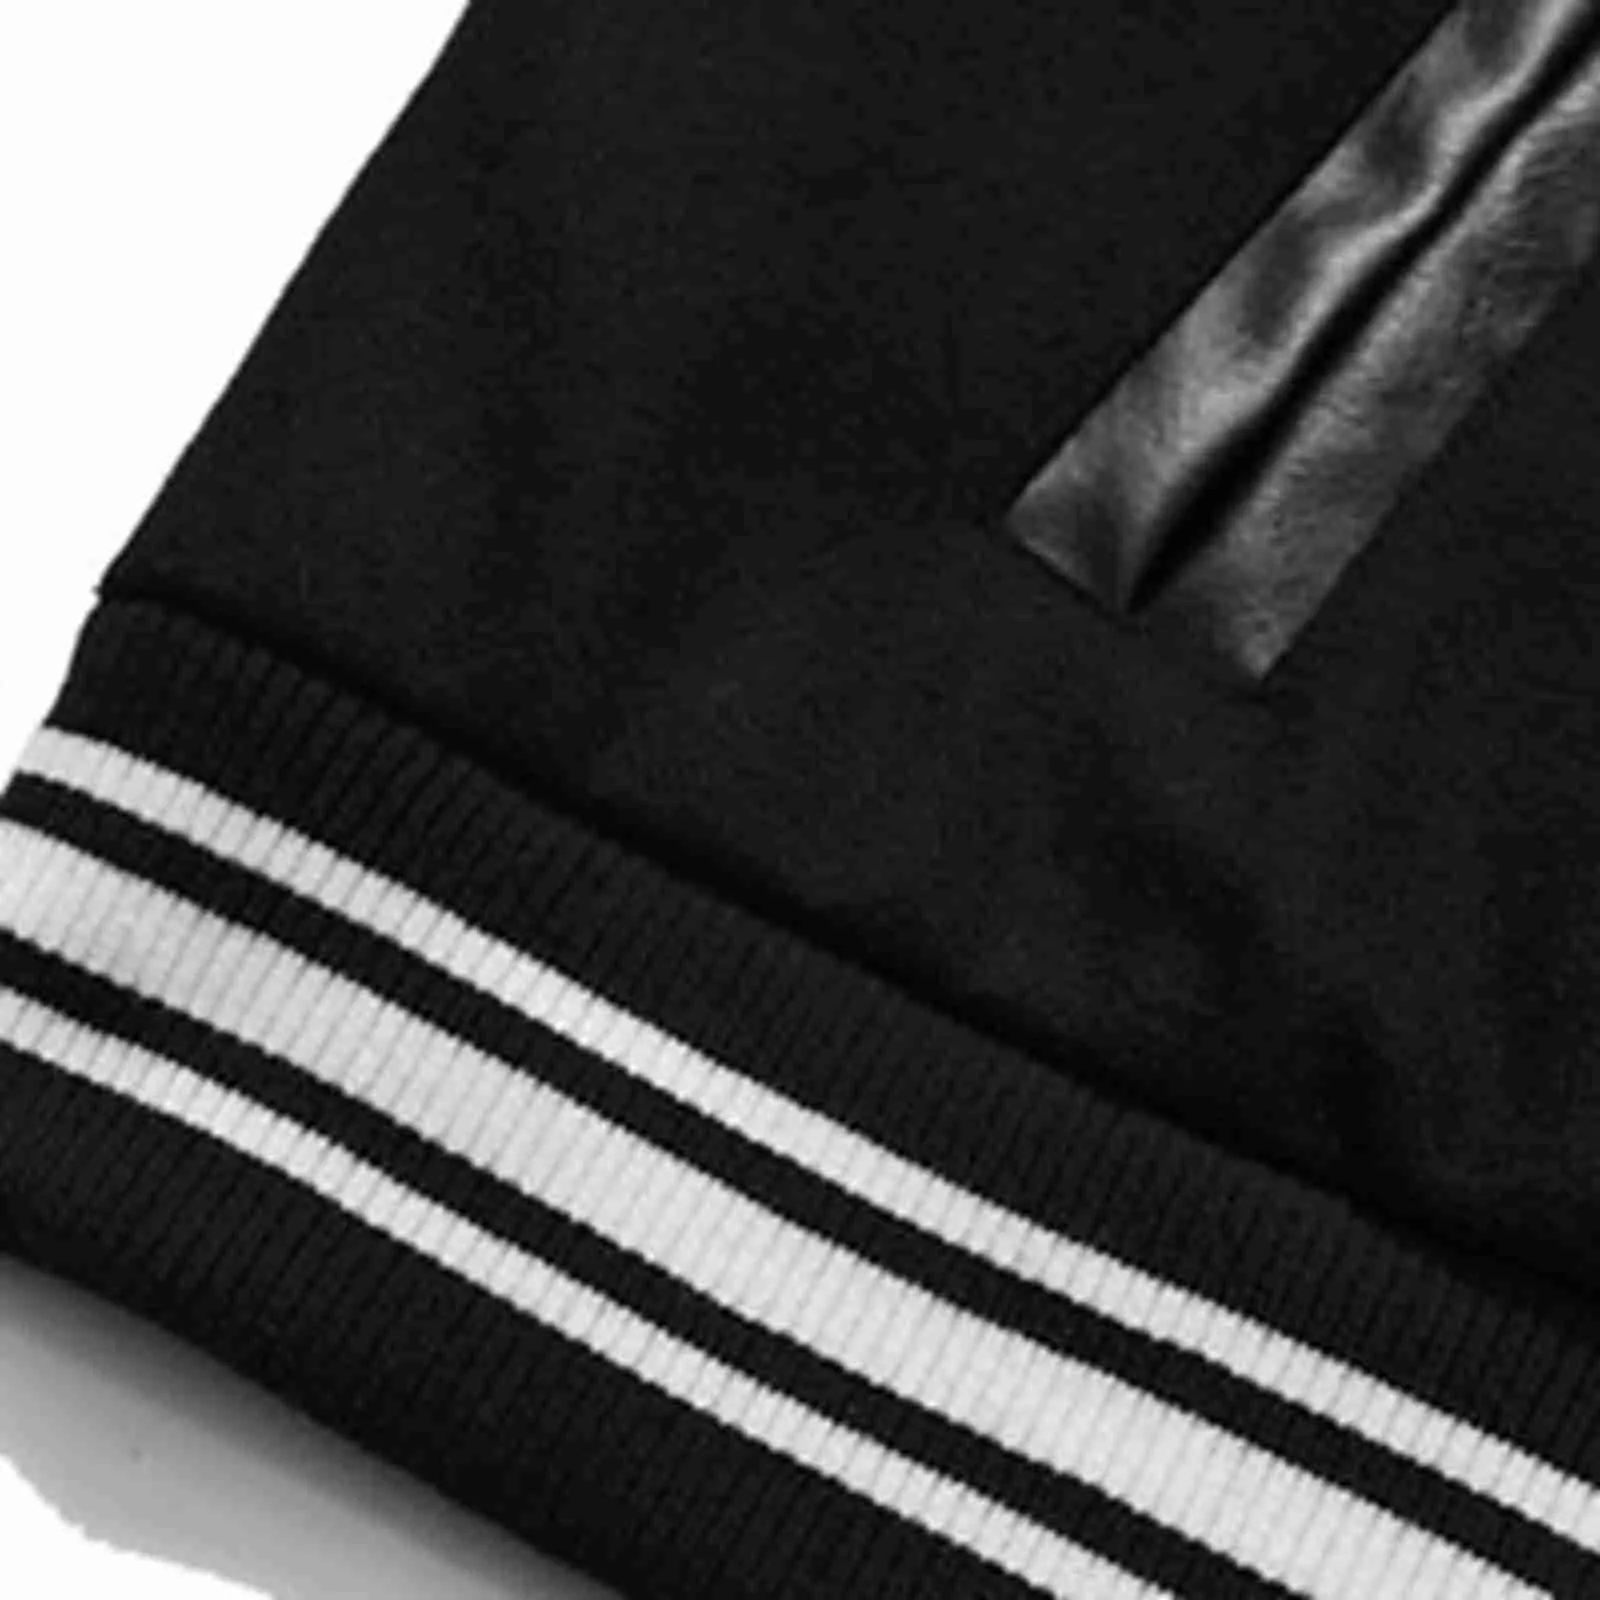 Mode Stilvolle Britische Jacken 2021 Hip Hop Streetwear Baseball Jacke Mantel Buchstabe B Knochen Stickerei Bomber College Jacke # f4 X0621